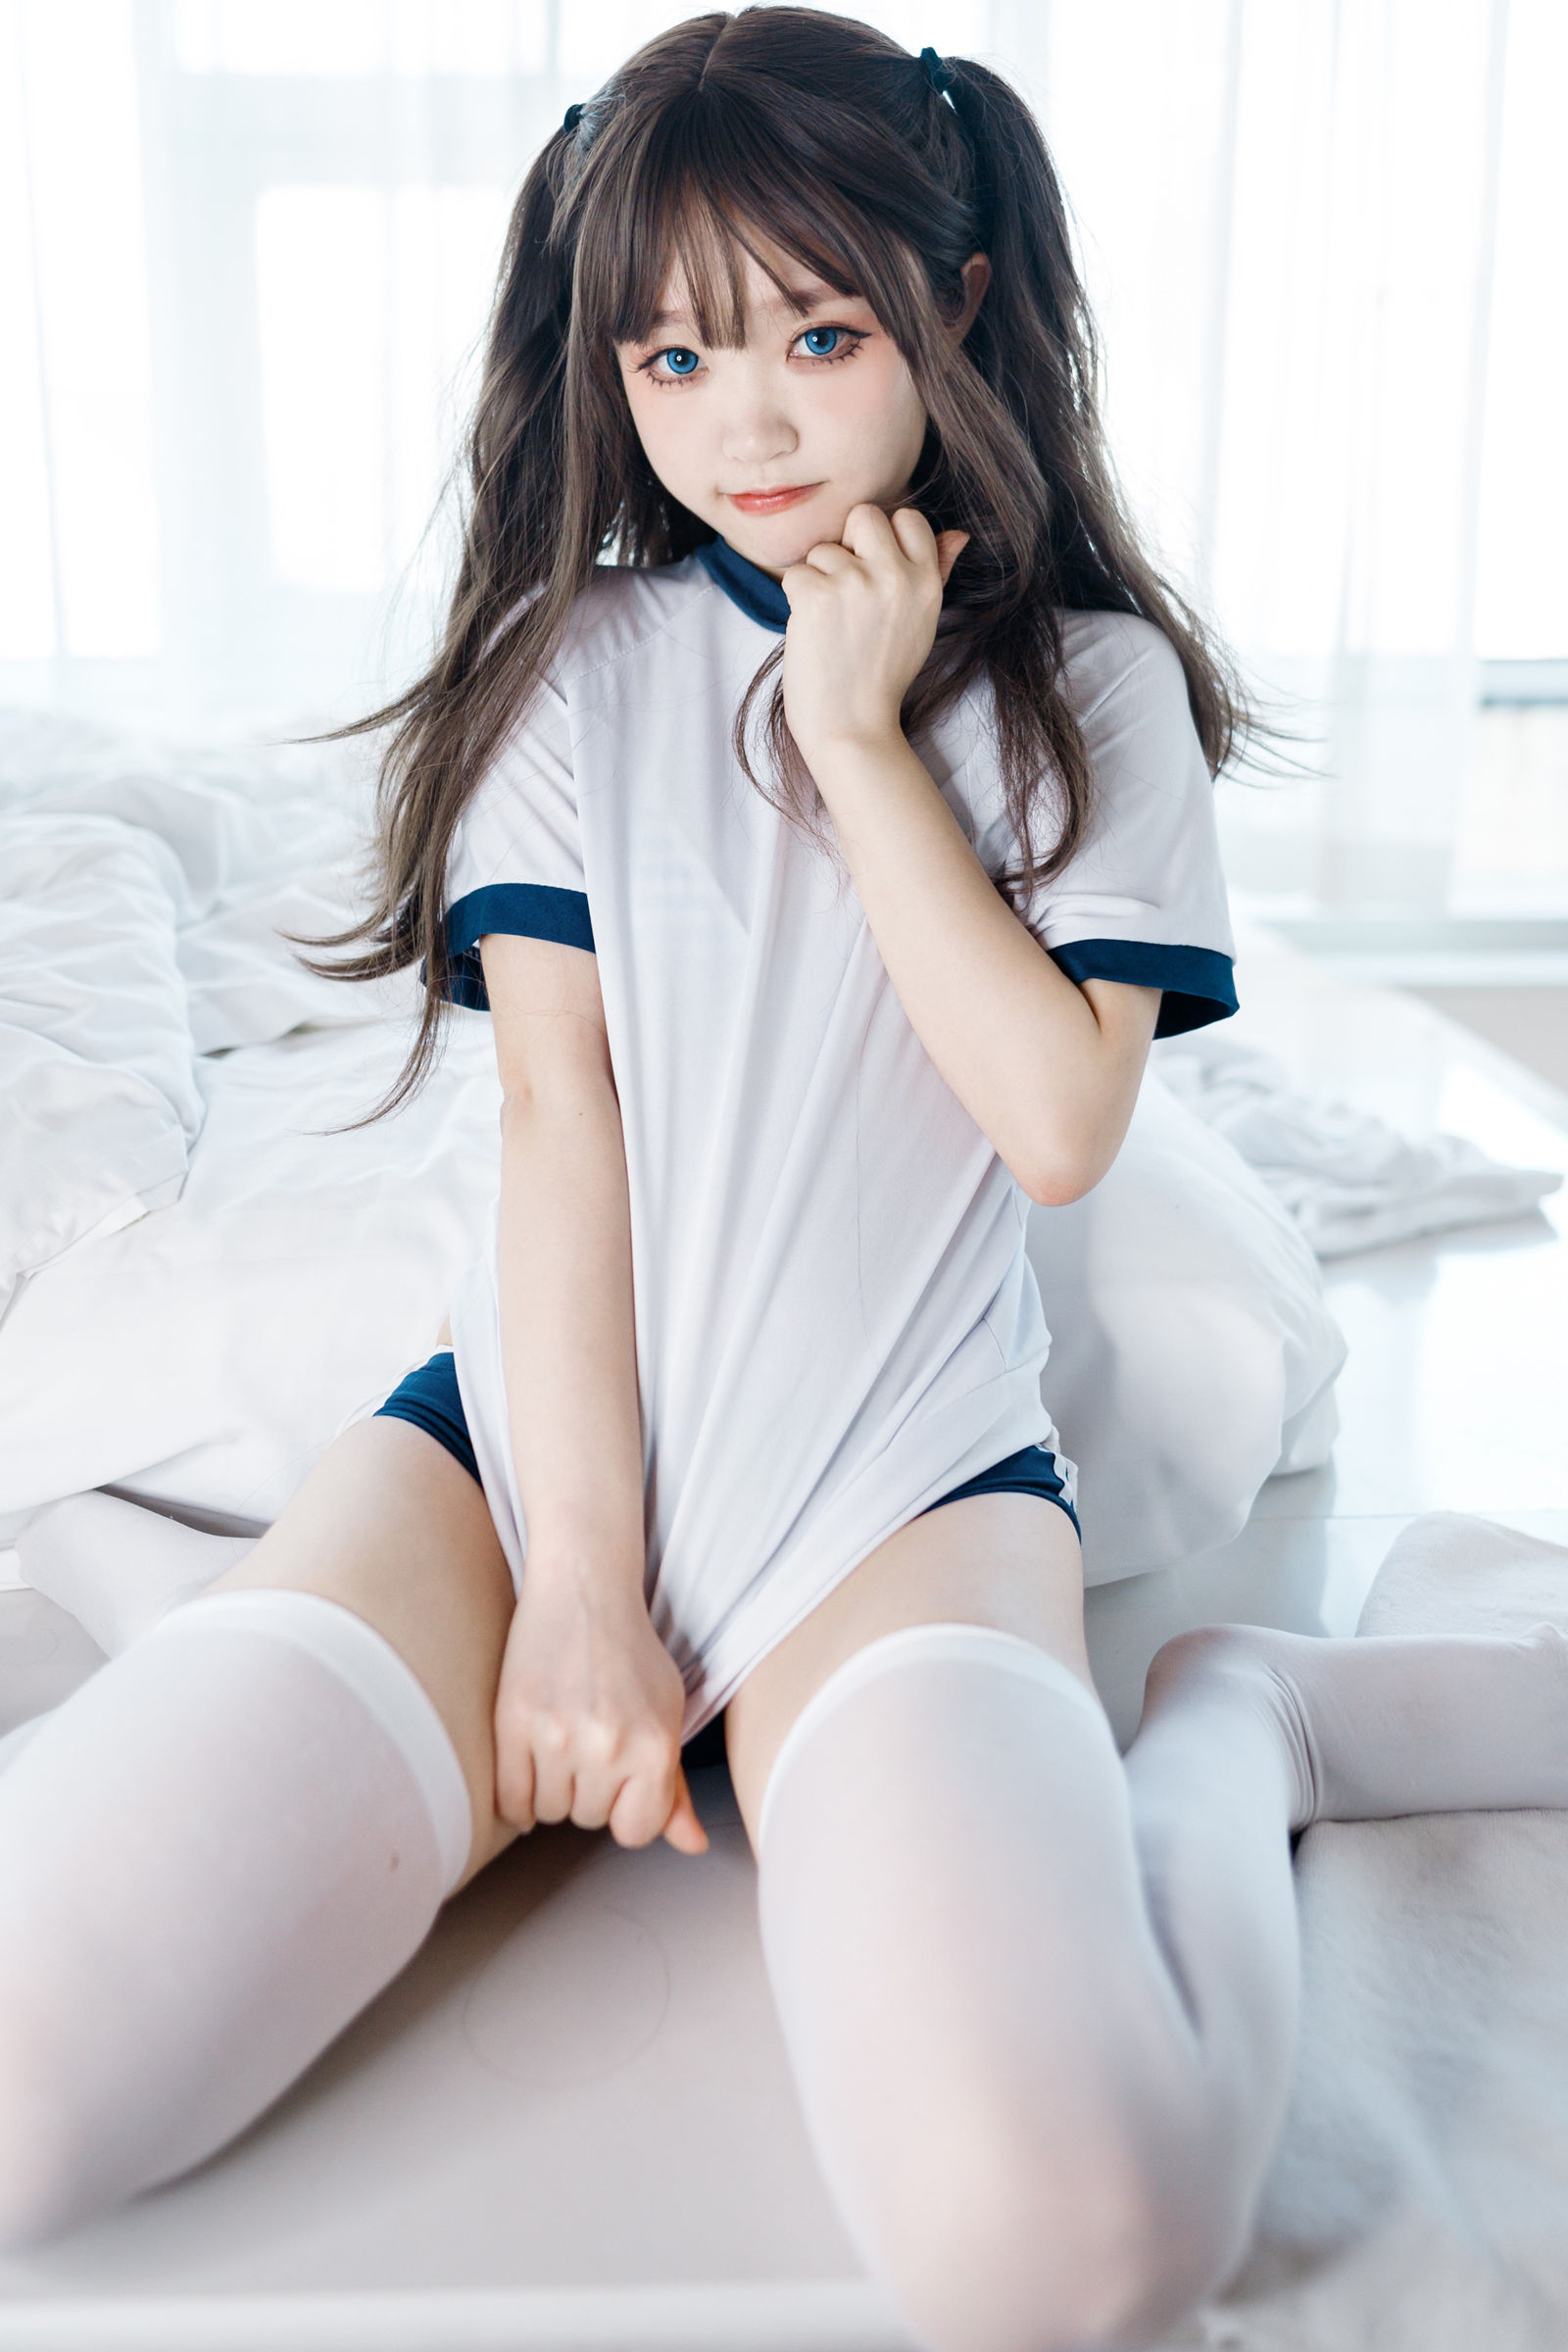 神沢永莉美女动漫博主性感Cosplay写真半双马尾体操服大腿袜|柠檬皮美女写真